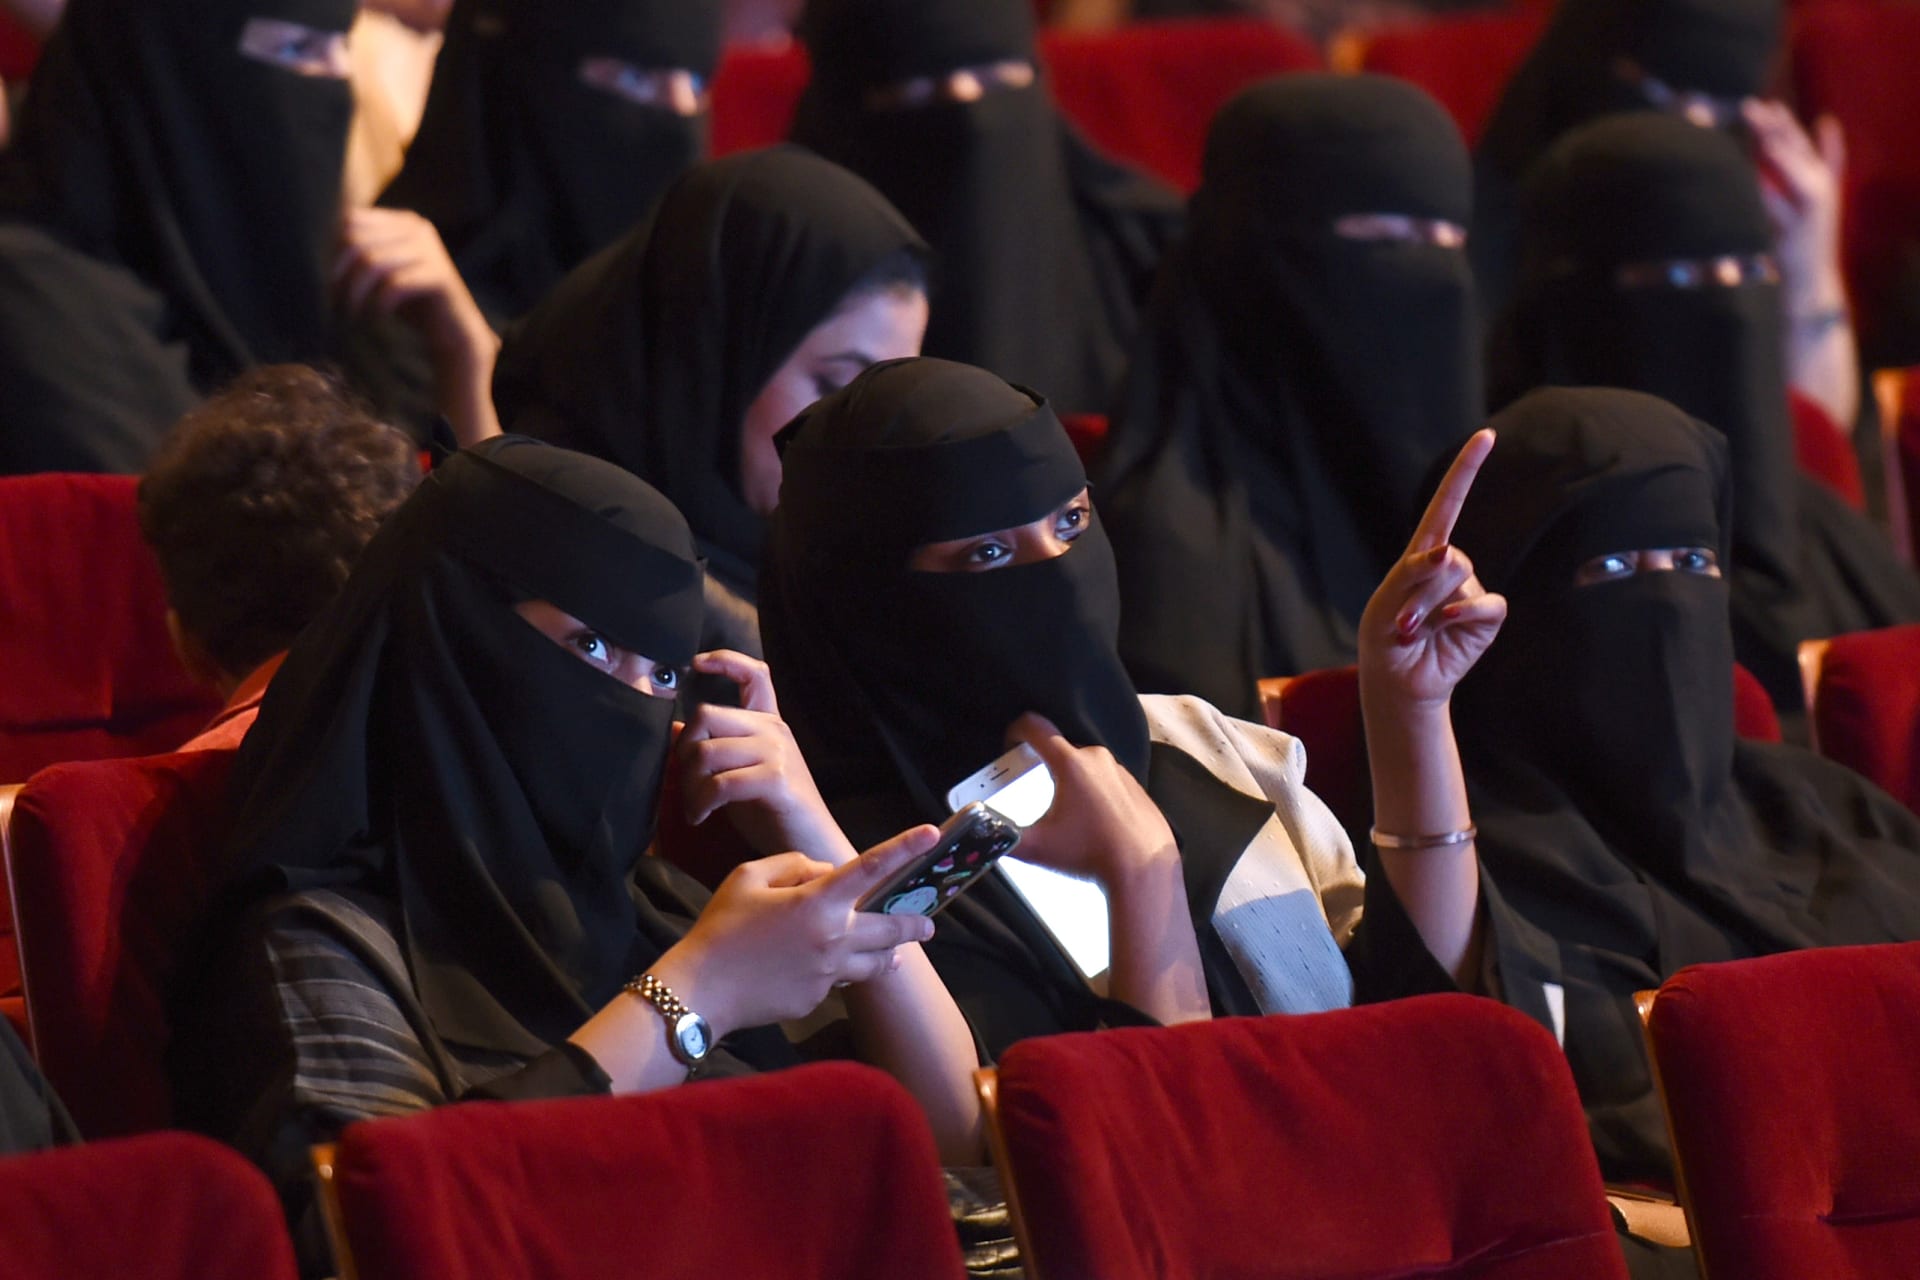 فوكس سينما تحصل على ترخيص لتشغيل دور السينما بالسعودية